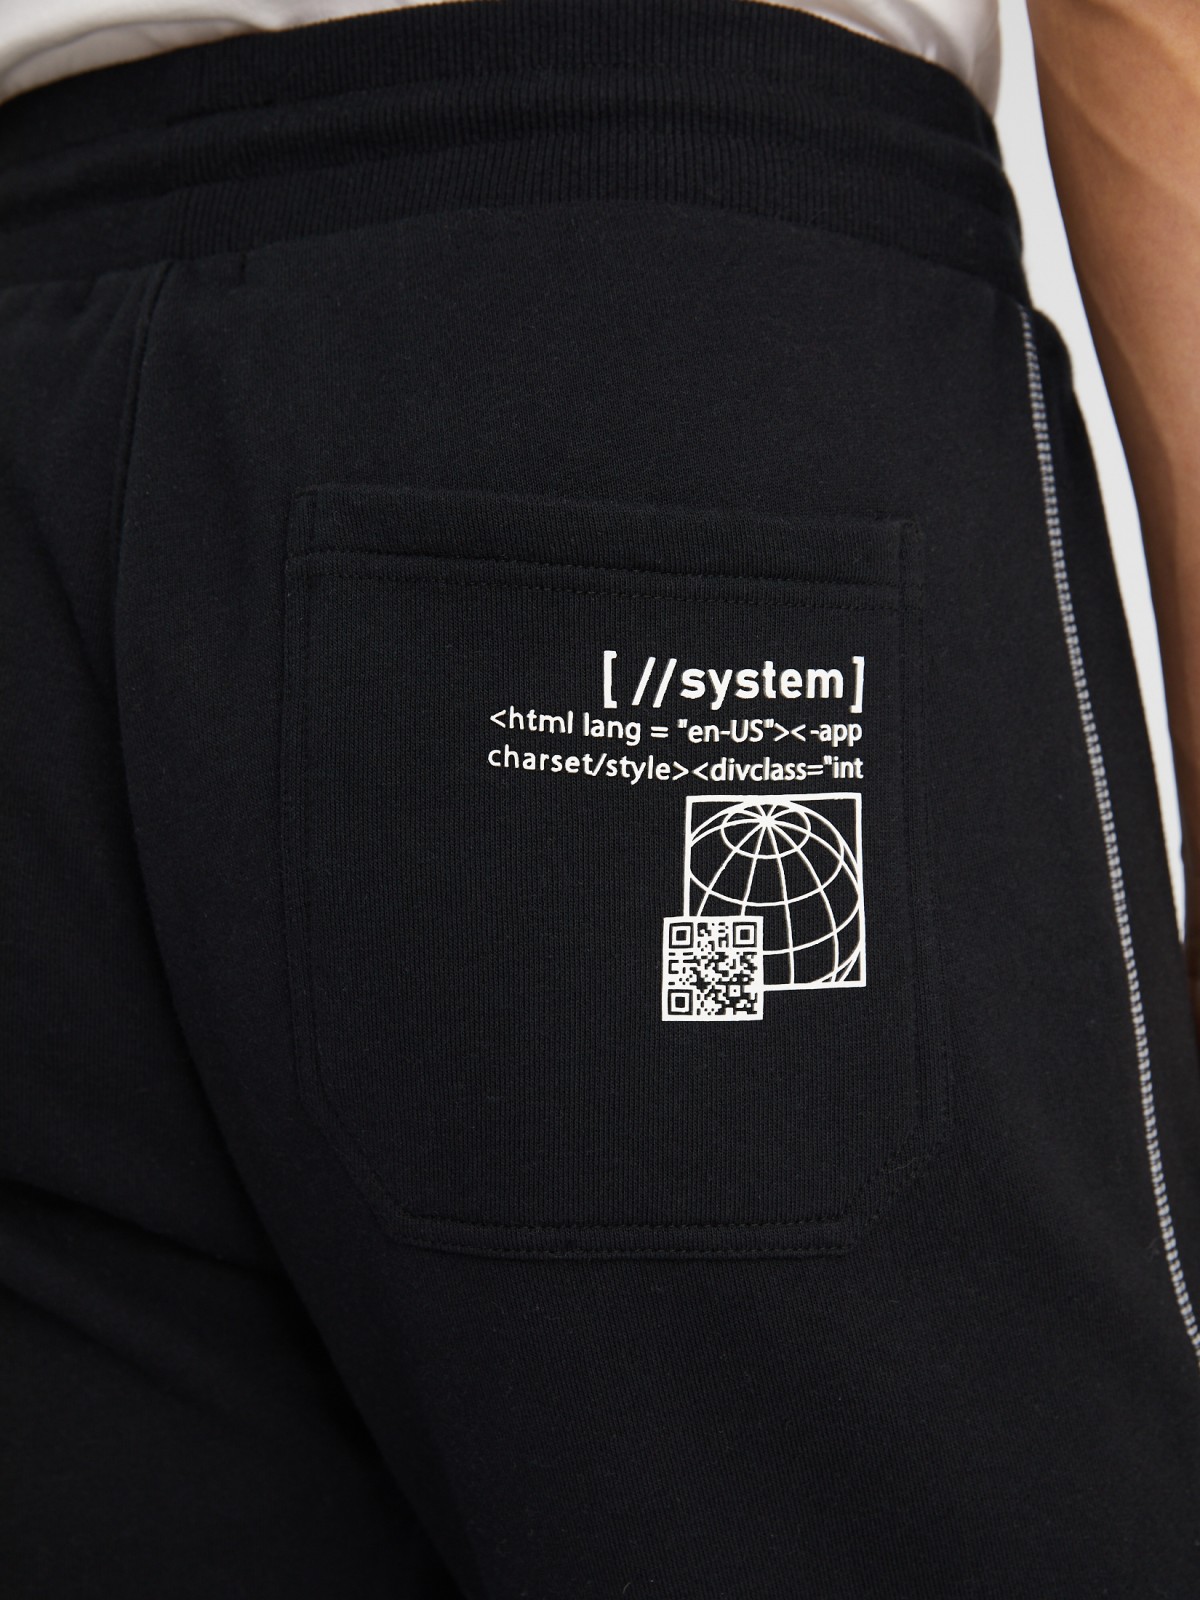 Утеплённые трикотажные брюки-джоггеры в спортивном стиле с принтом